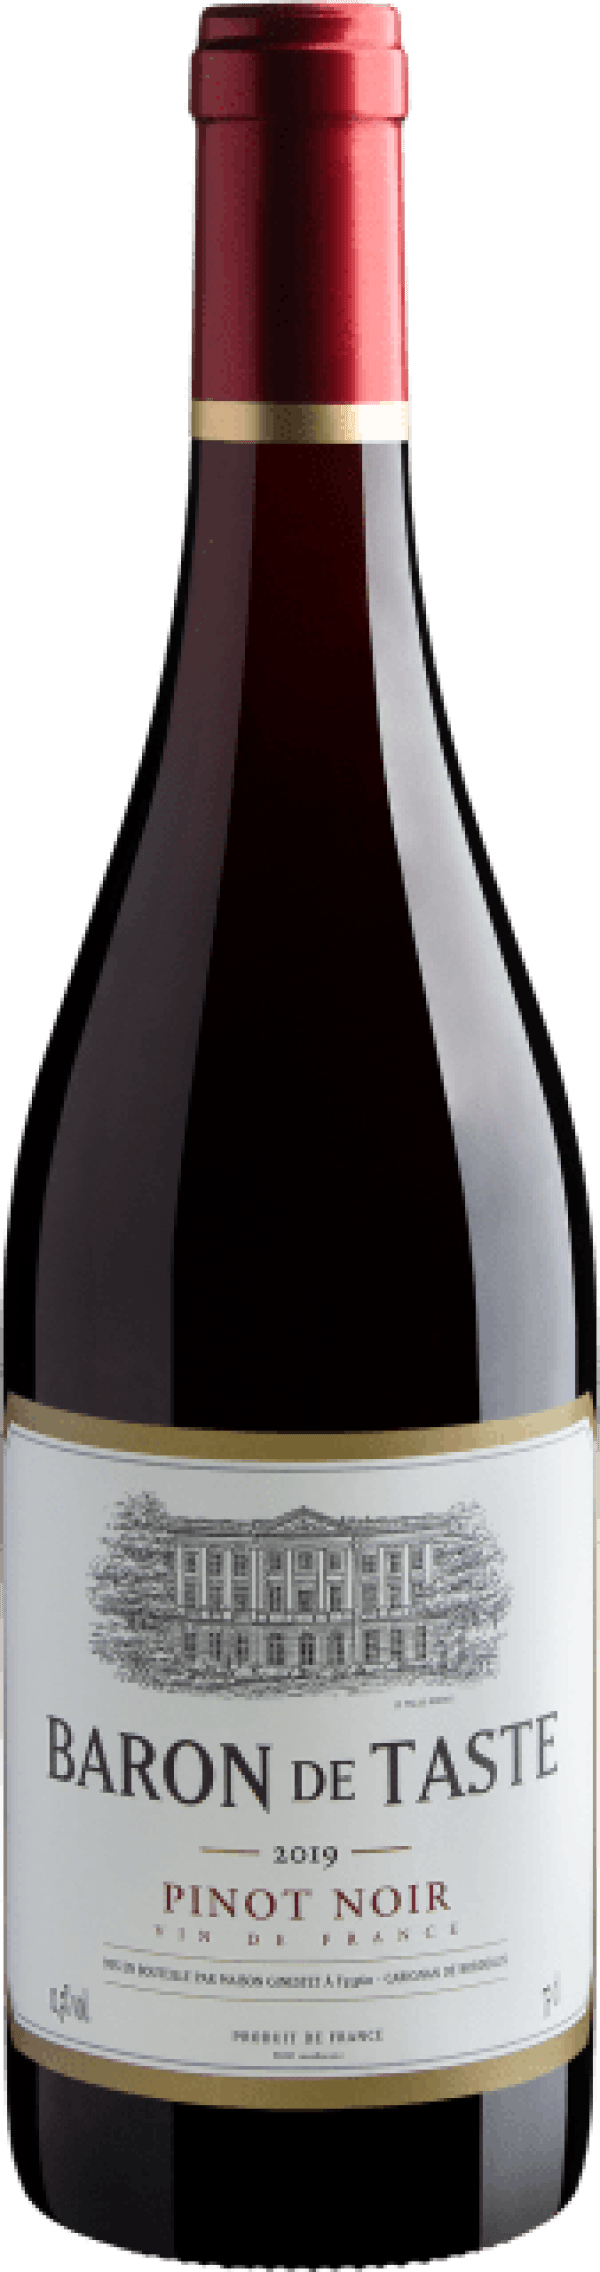 Baron de Taste Pinot Noir 2019